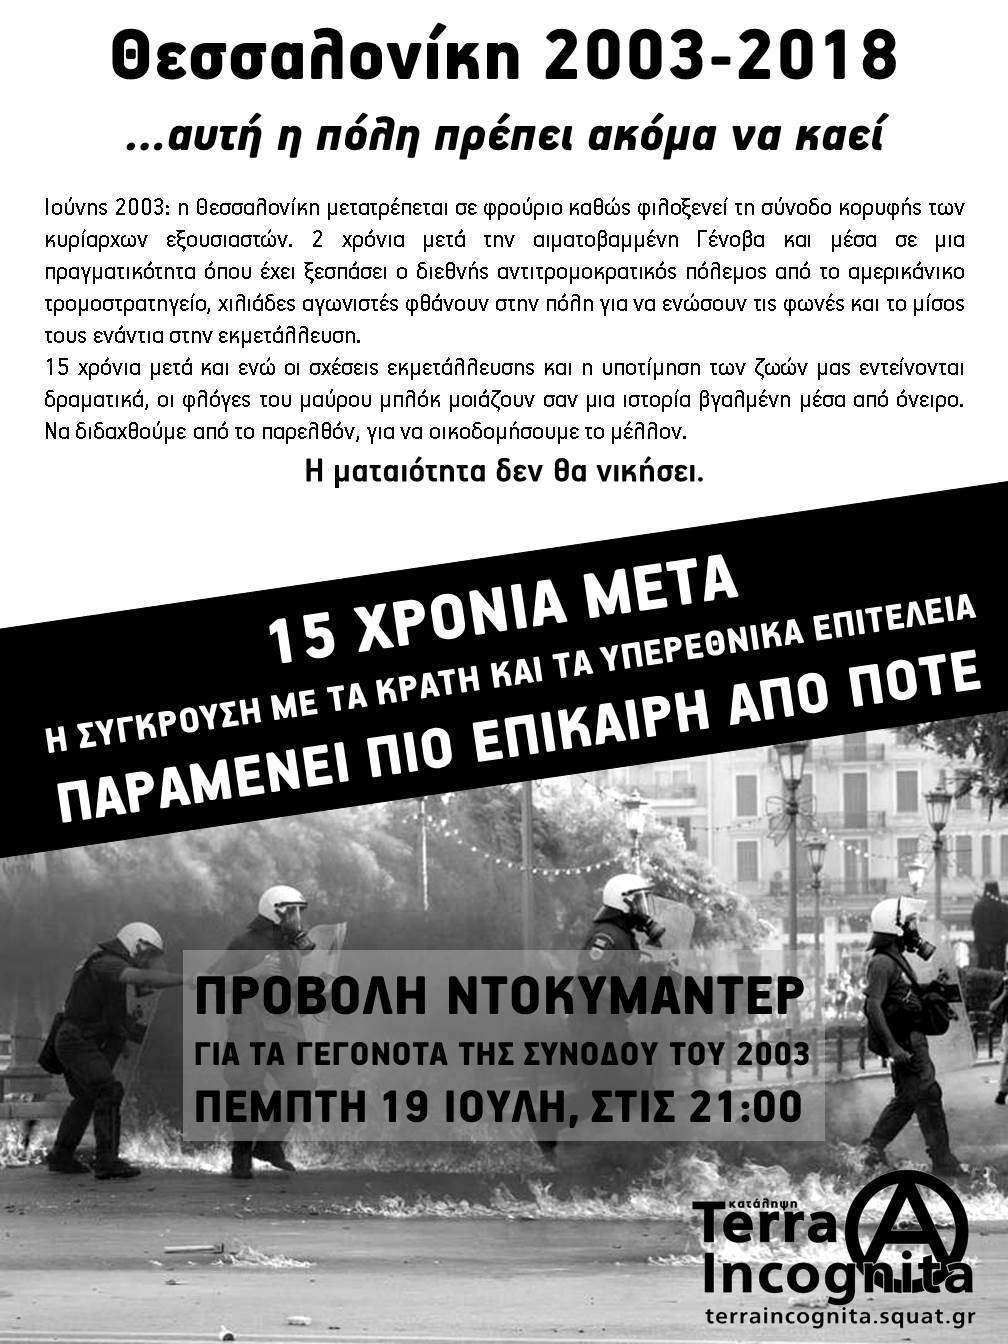 Θεσσαλονίκη: Προβολή ντοκυμαντερ για τα γεγονότα της συνόδου του 2003 [Πέμπτη 19/07]